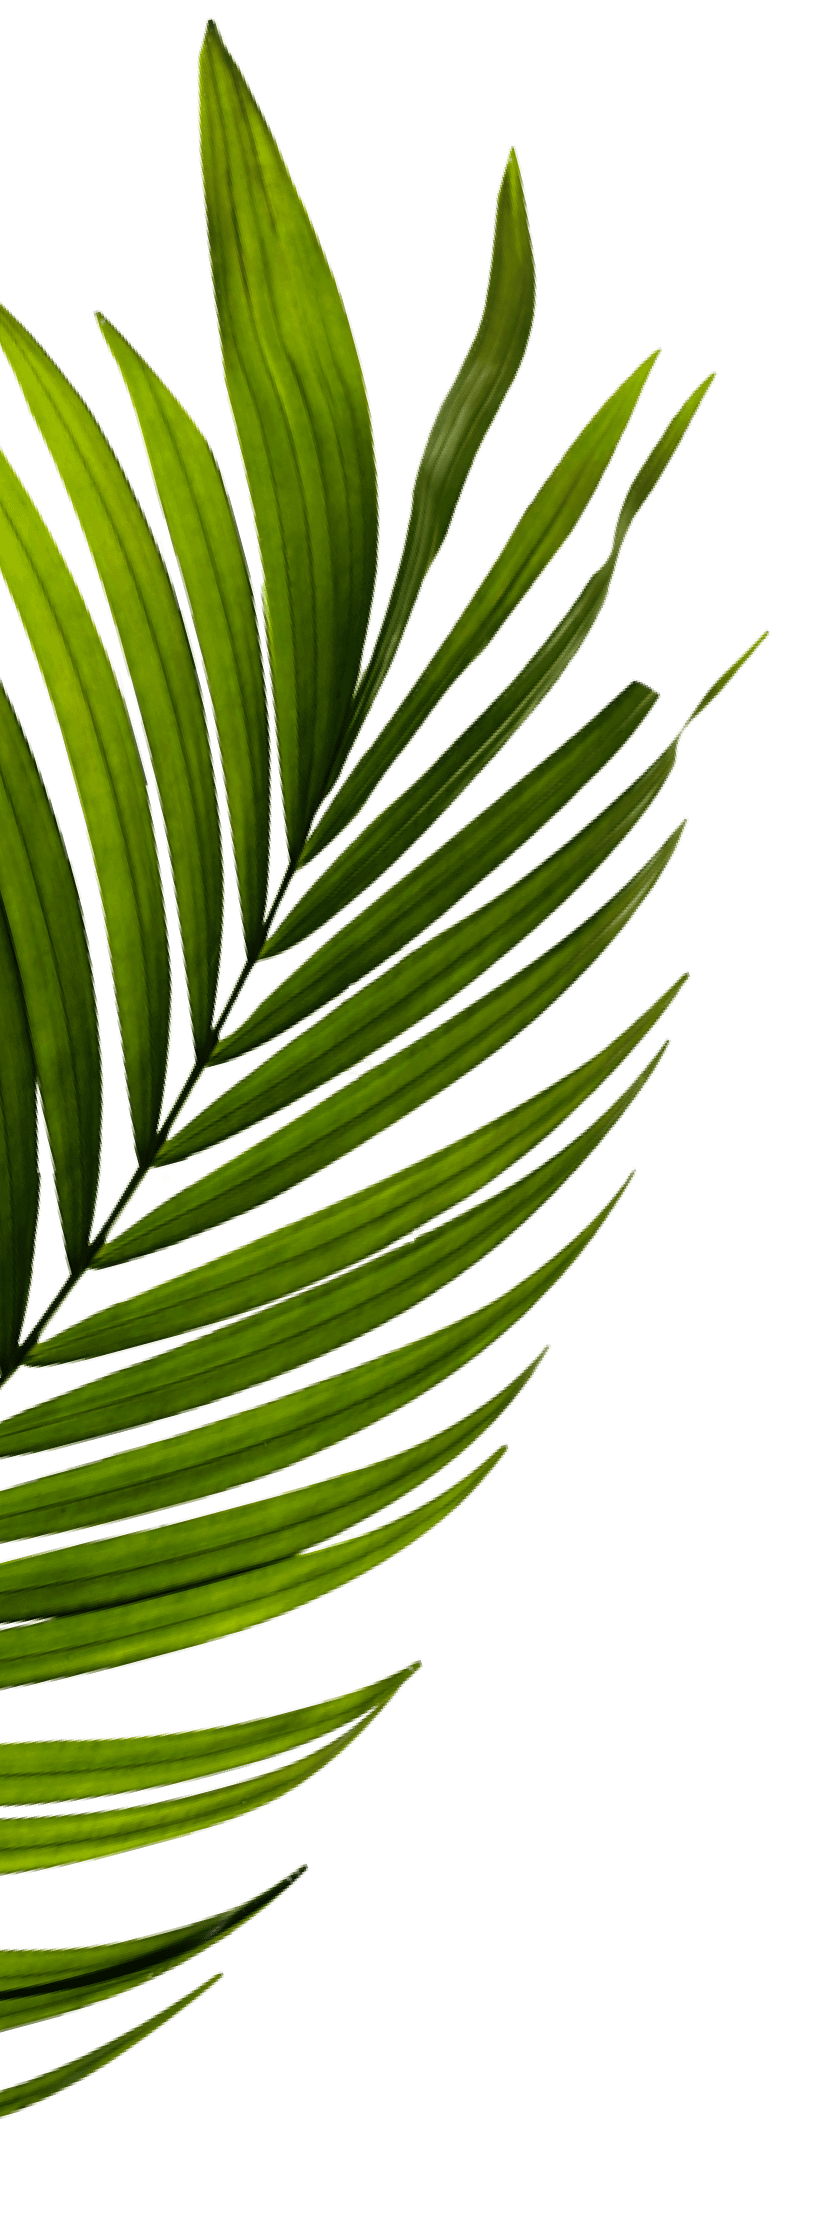 Imagen de una palmera